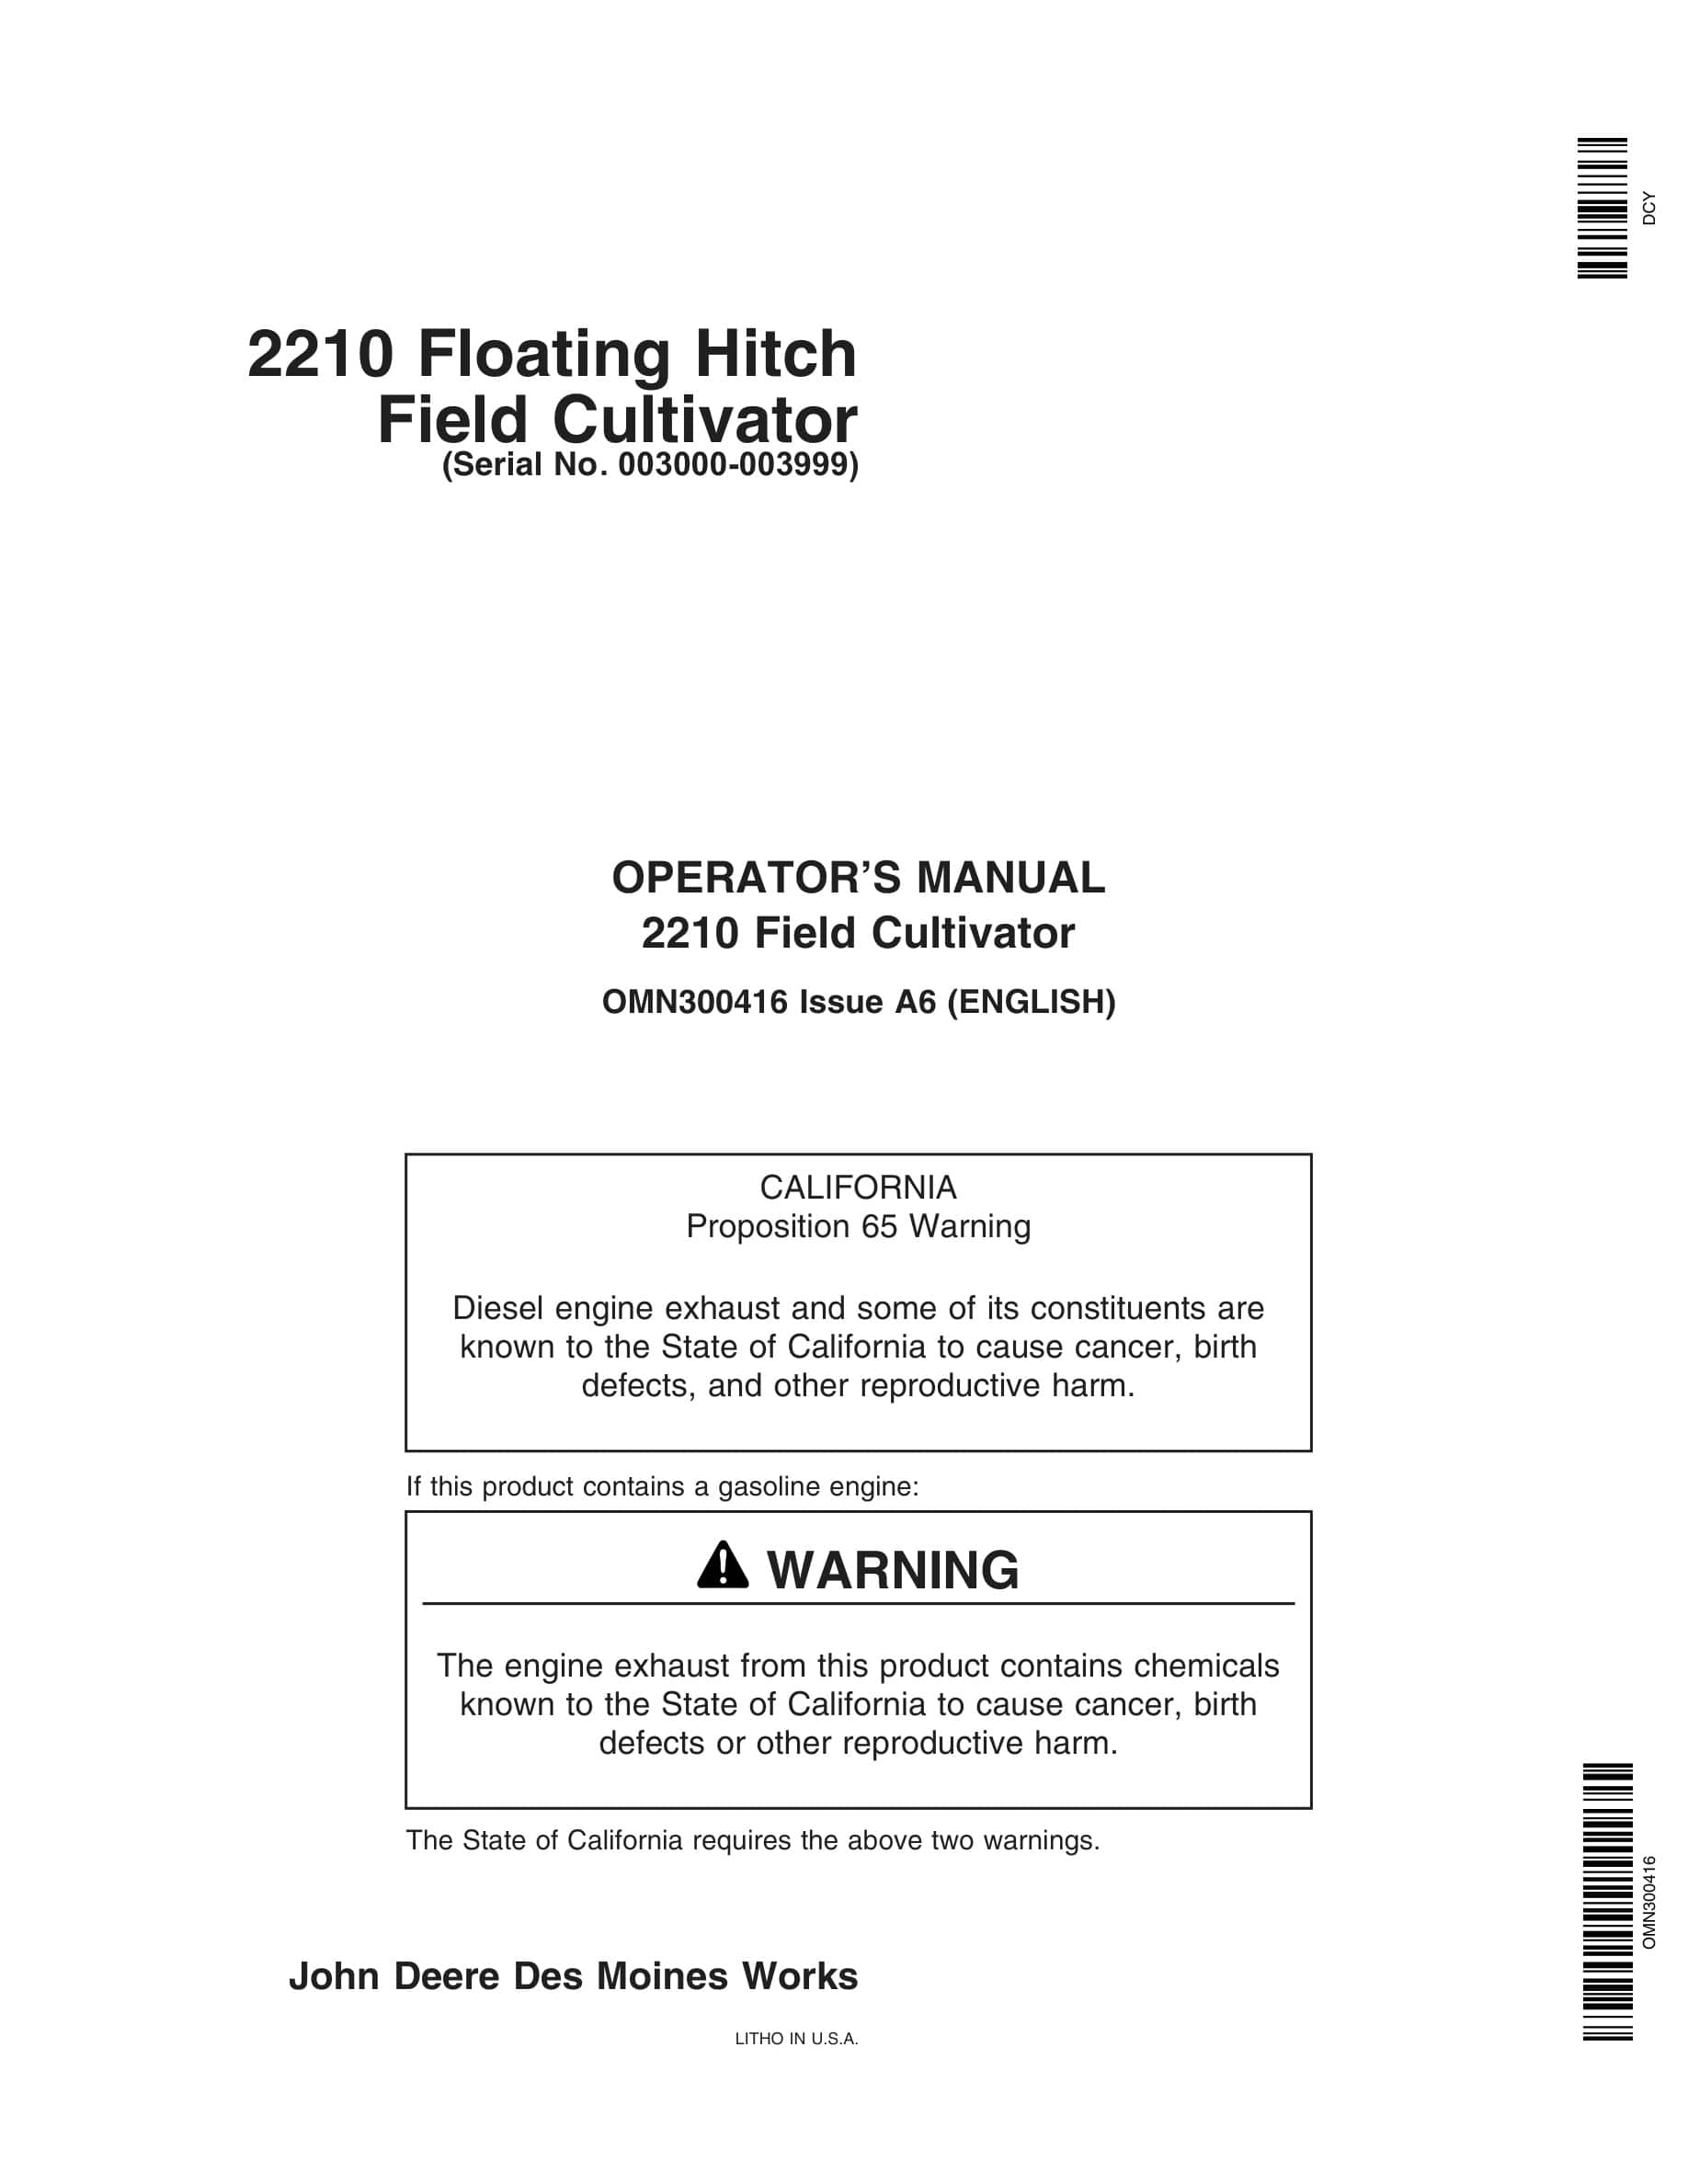 John Deere 2210 Floating Hitch Field Cultivator Operator Manual OMN300416-1